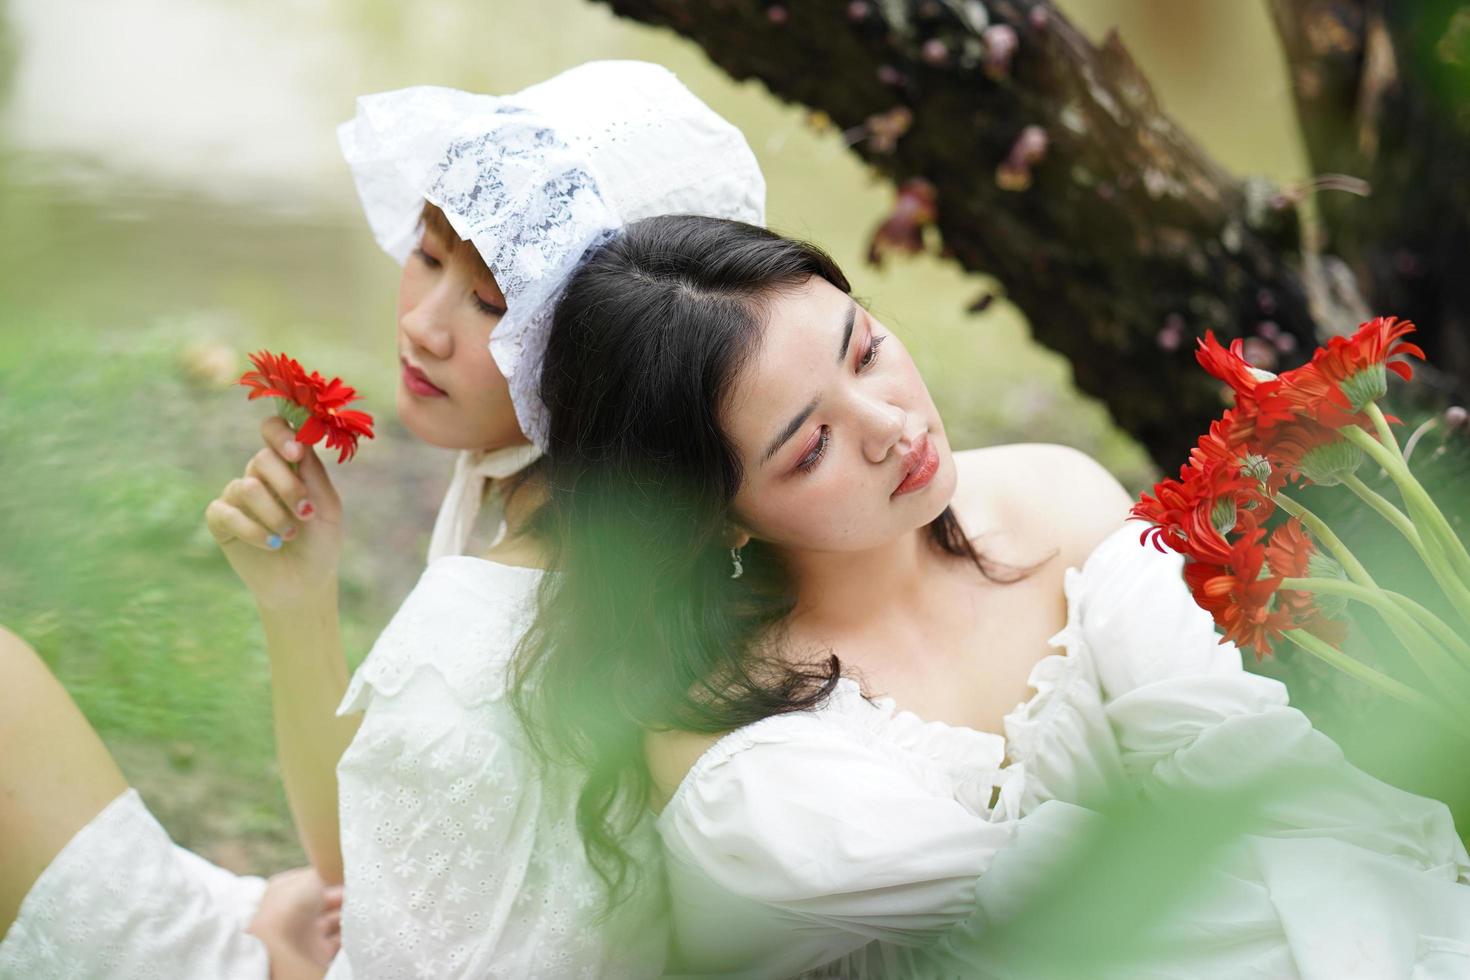 due donne e fiori rossi foto